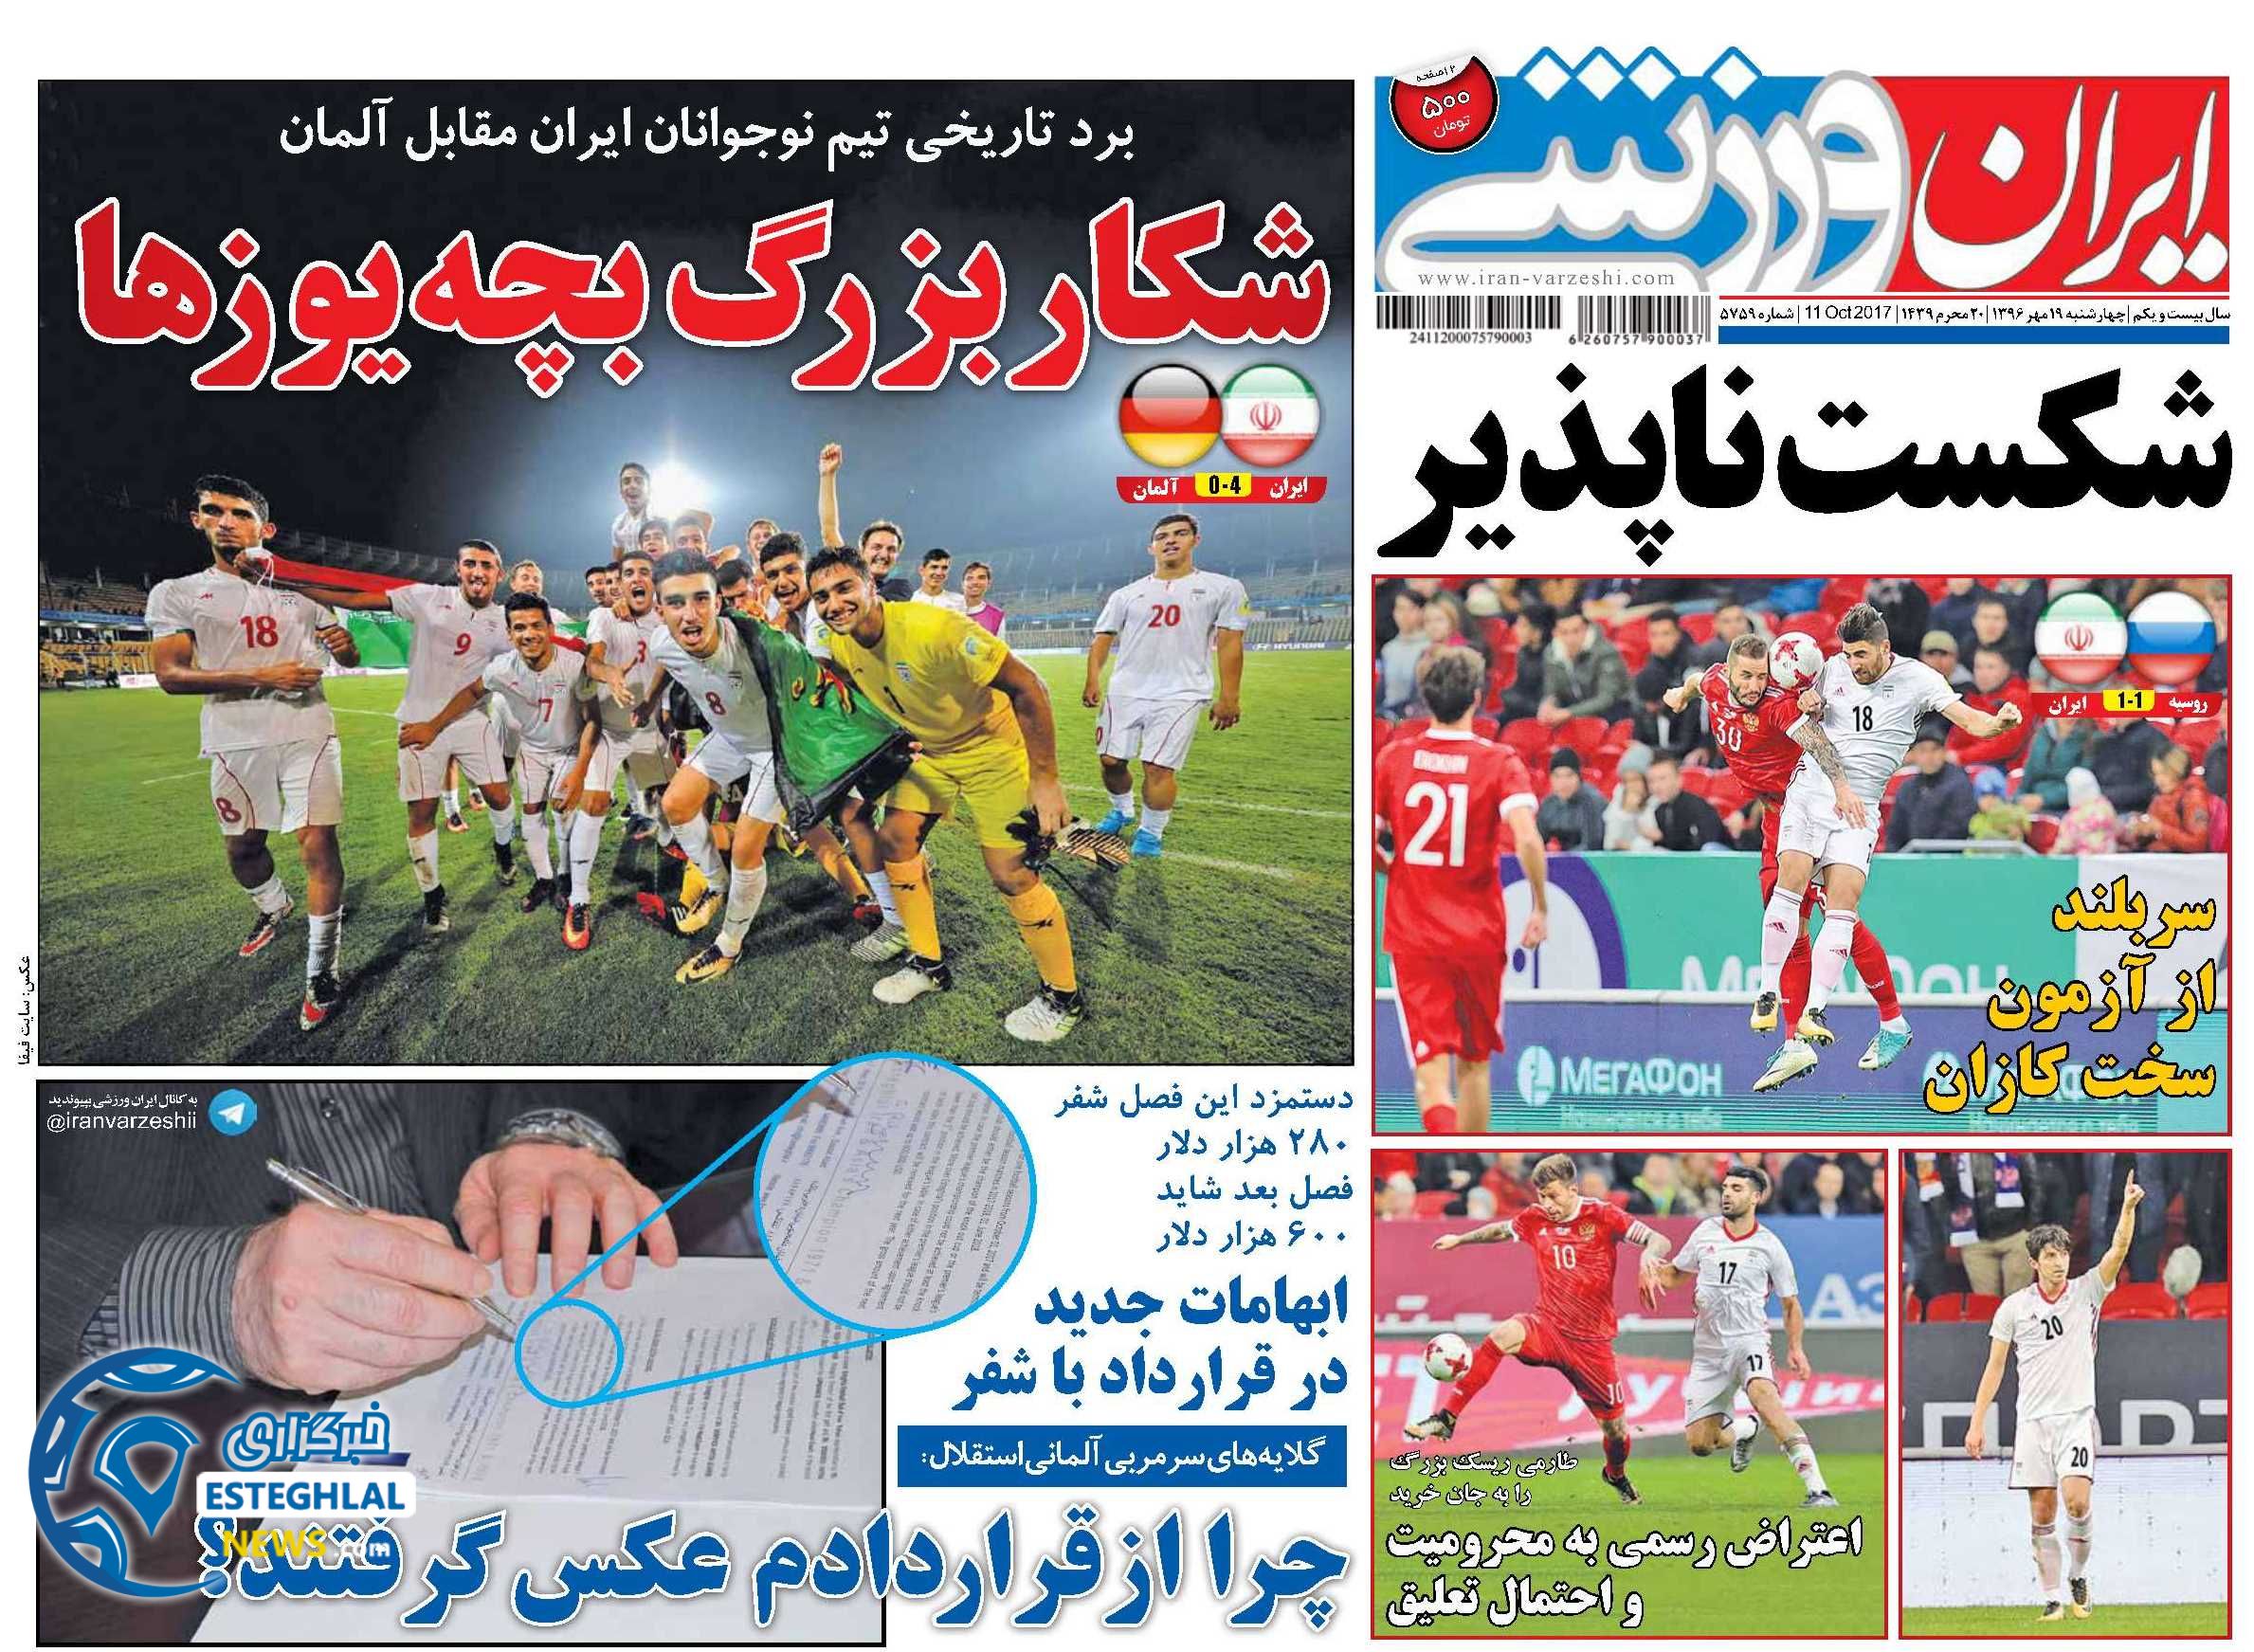 رونامه ایران ورزشی 19 مهر 96